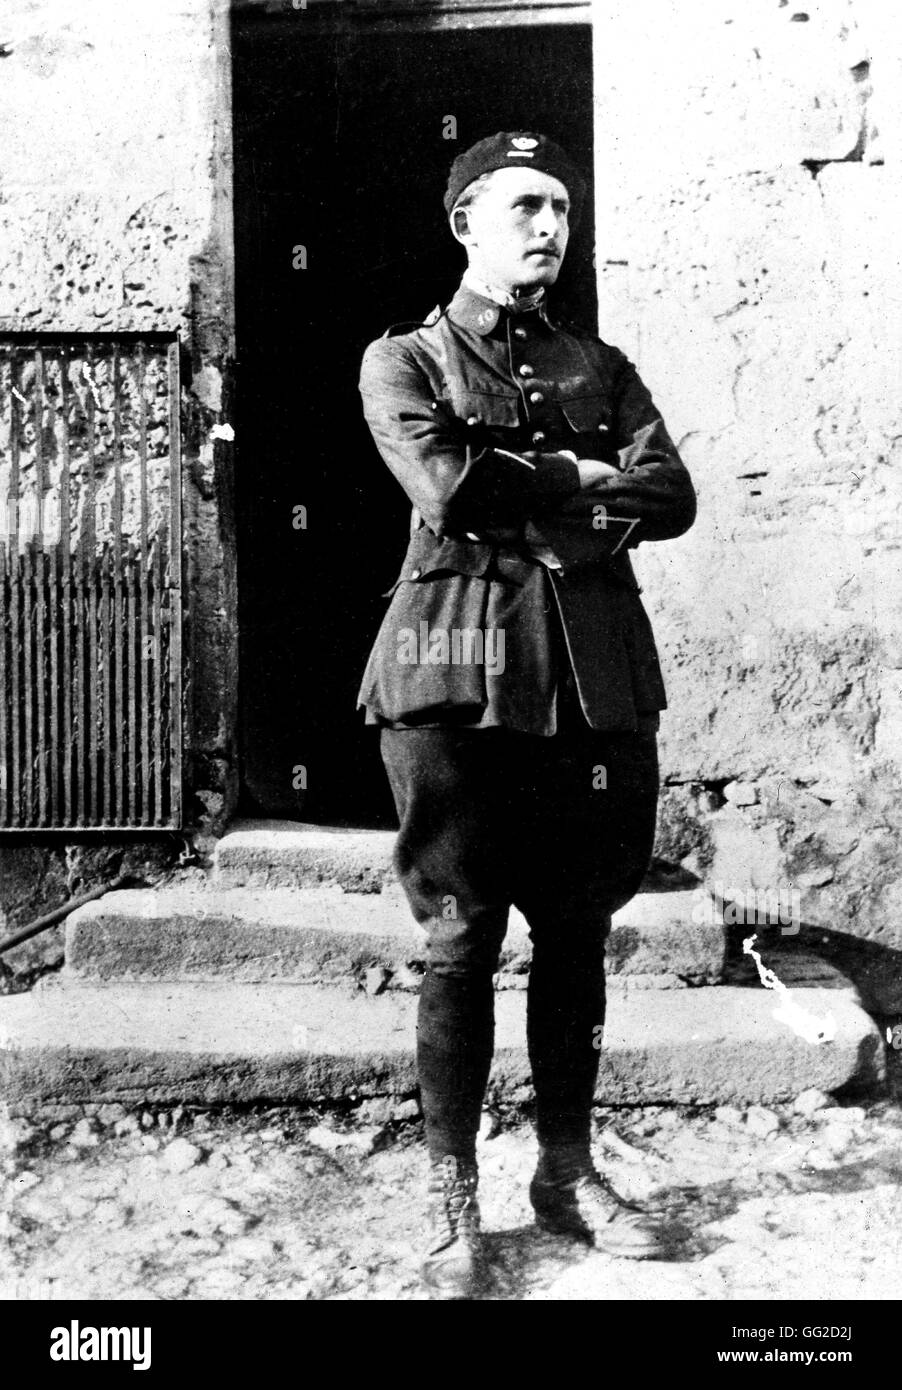 Louis Jaurès (son of Jean Jaurès), aged 19, on his last leave 20th century France Castres. Jaurès Museum Stock Photo